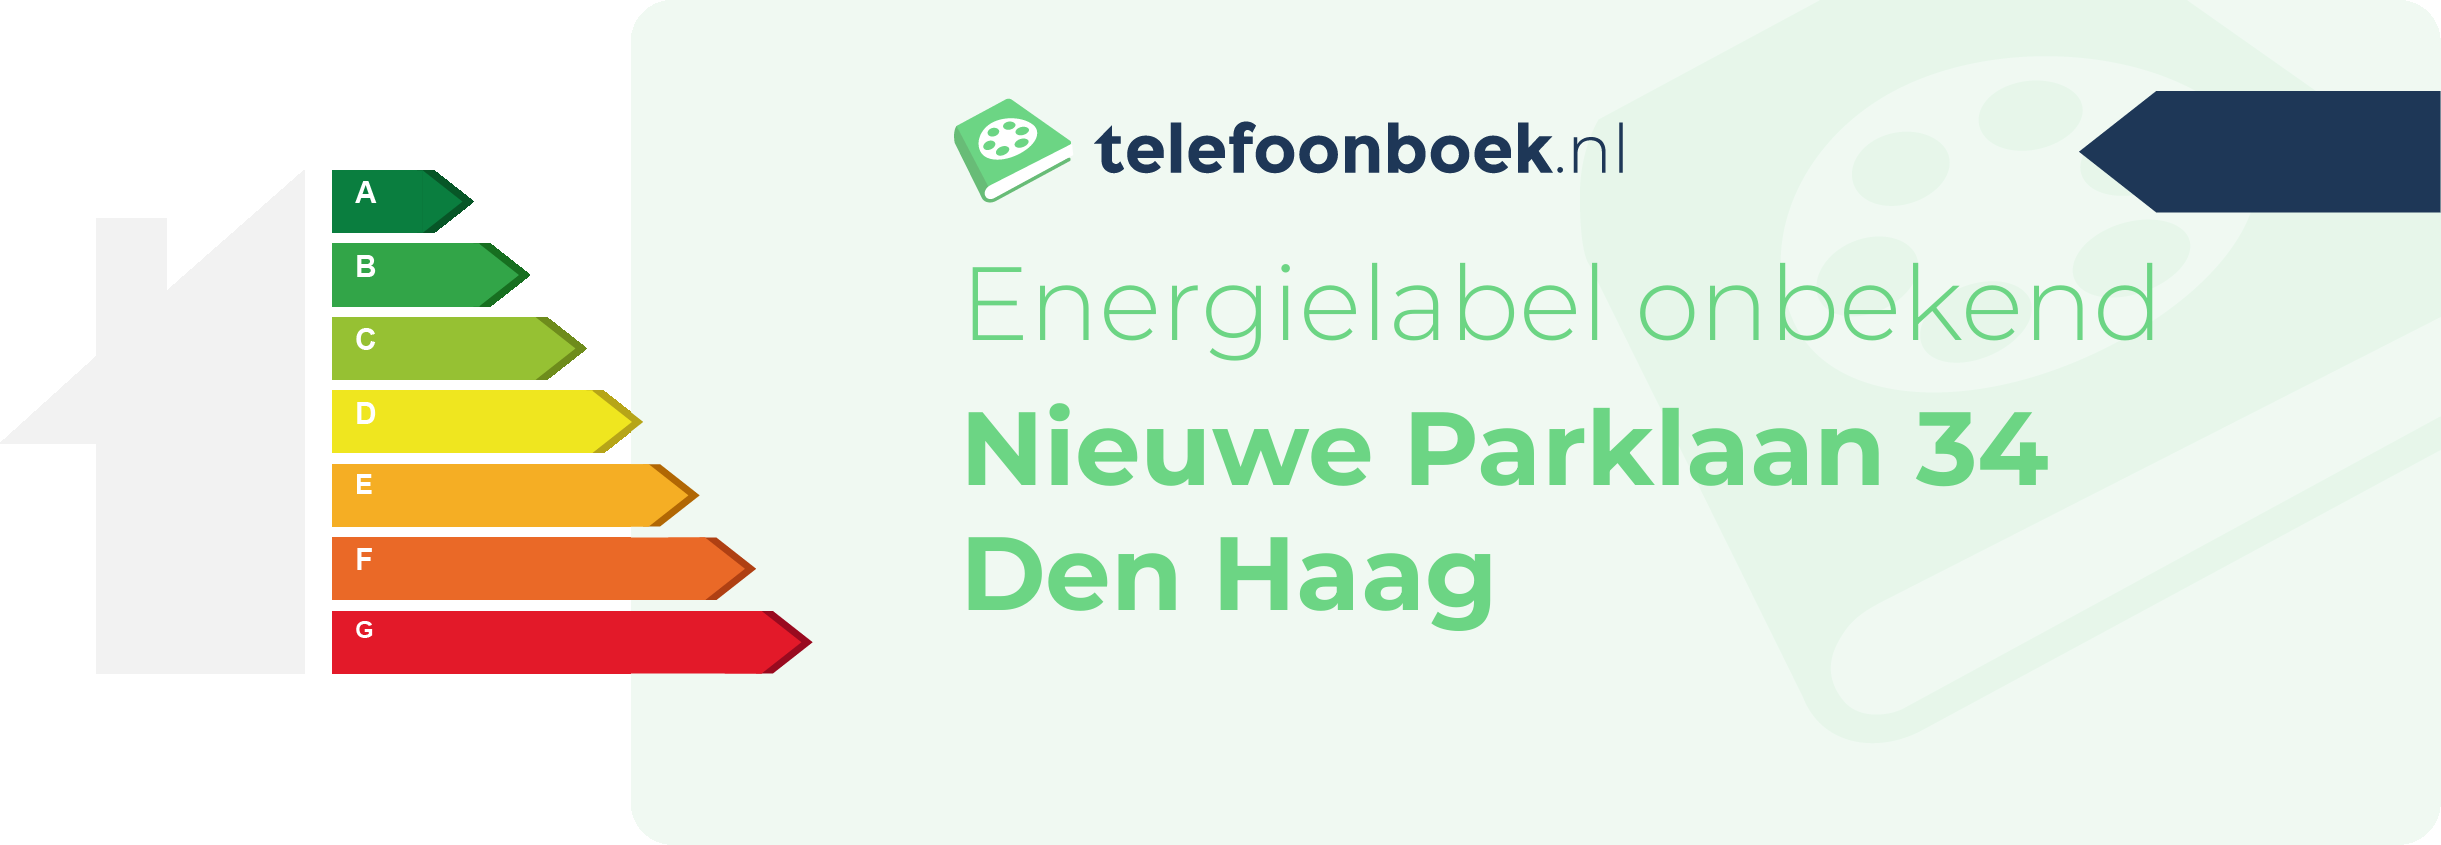 Energielabel Nieuwe Parklaan 34 Den Haag